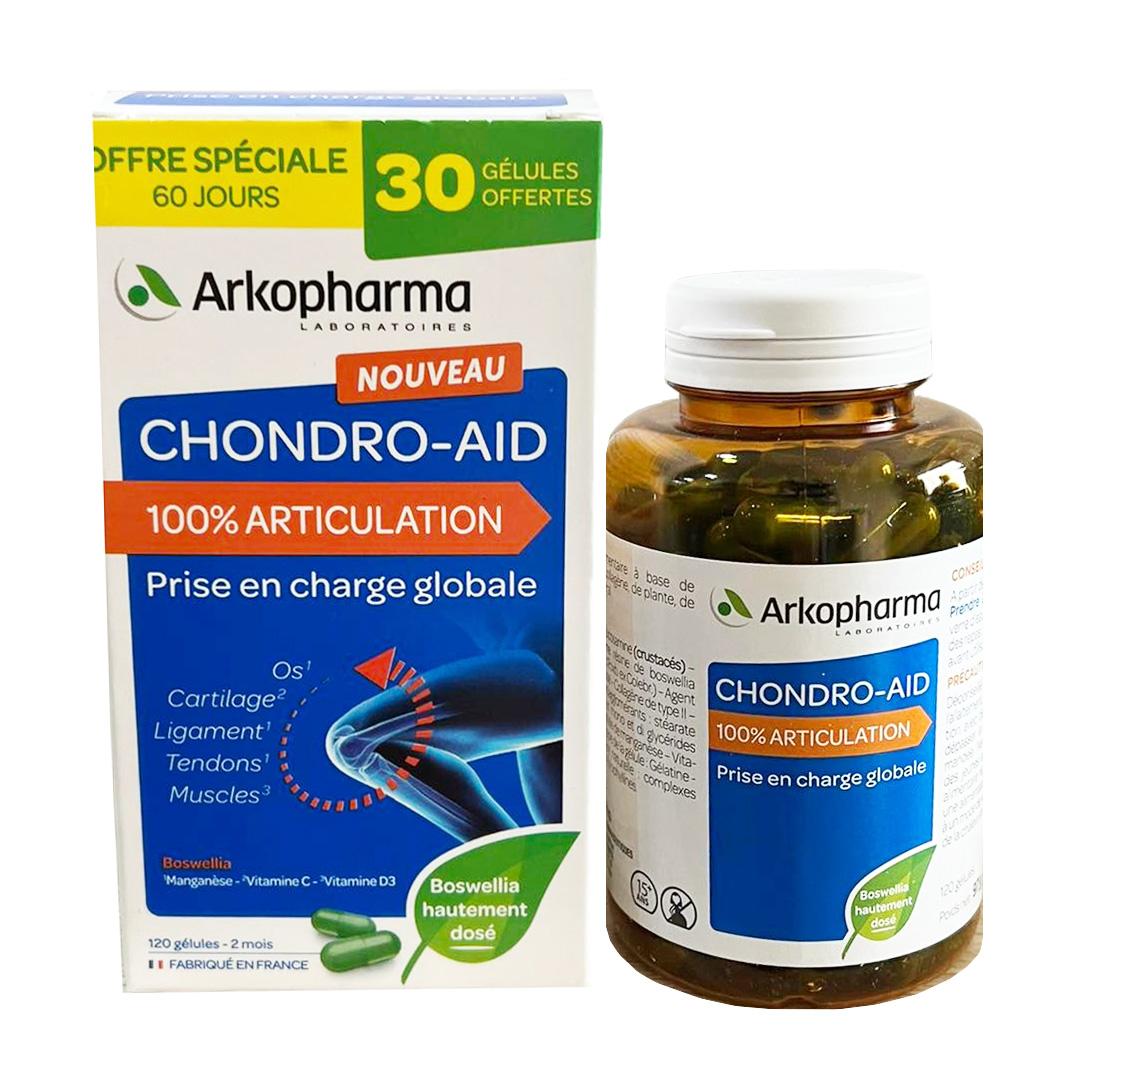 Hình ảnh của Viên uống hỗ trợ xương khớp Chondro-aids - Arkopharma, kích thích tái tạo mô sụn khớp